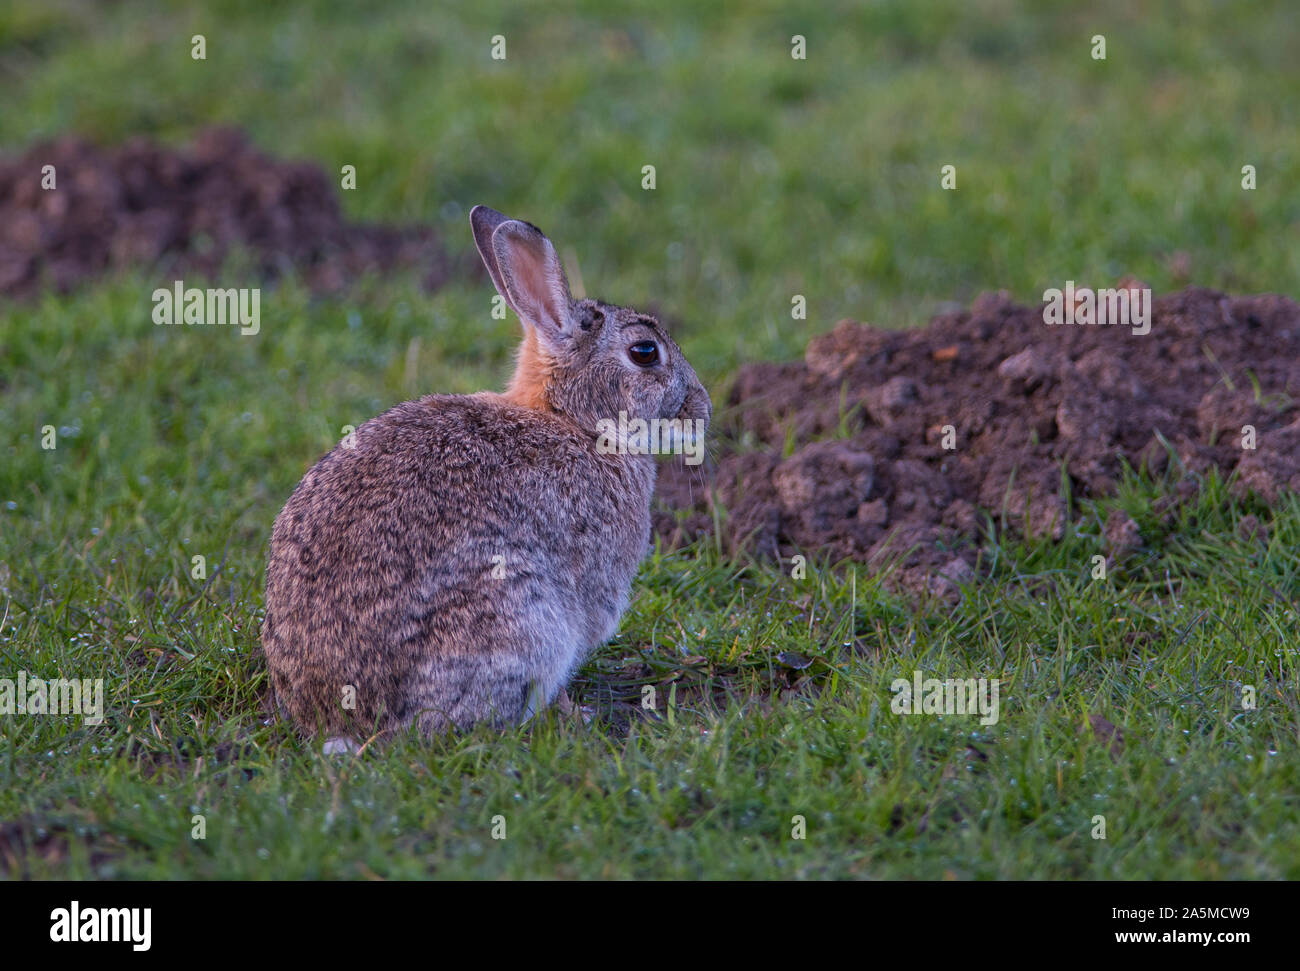 Europäische Kaninchen (Oryctolagus cuniculus) setzte sich in einem Feld voller Maulwurfshügel, South Yorkshire, England. Stockfoto